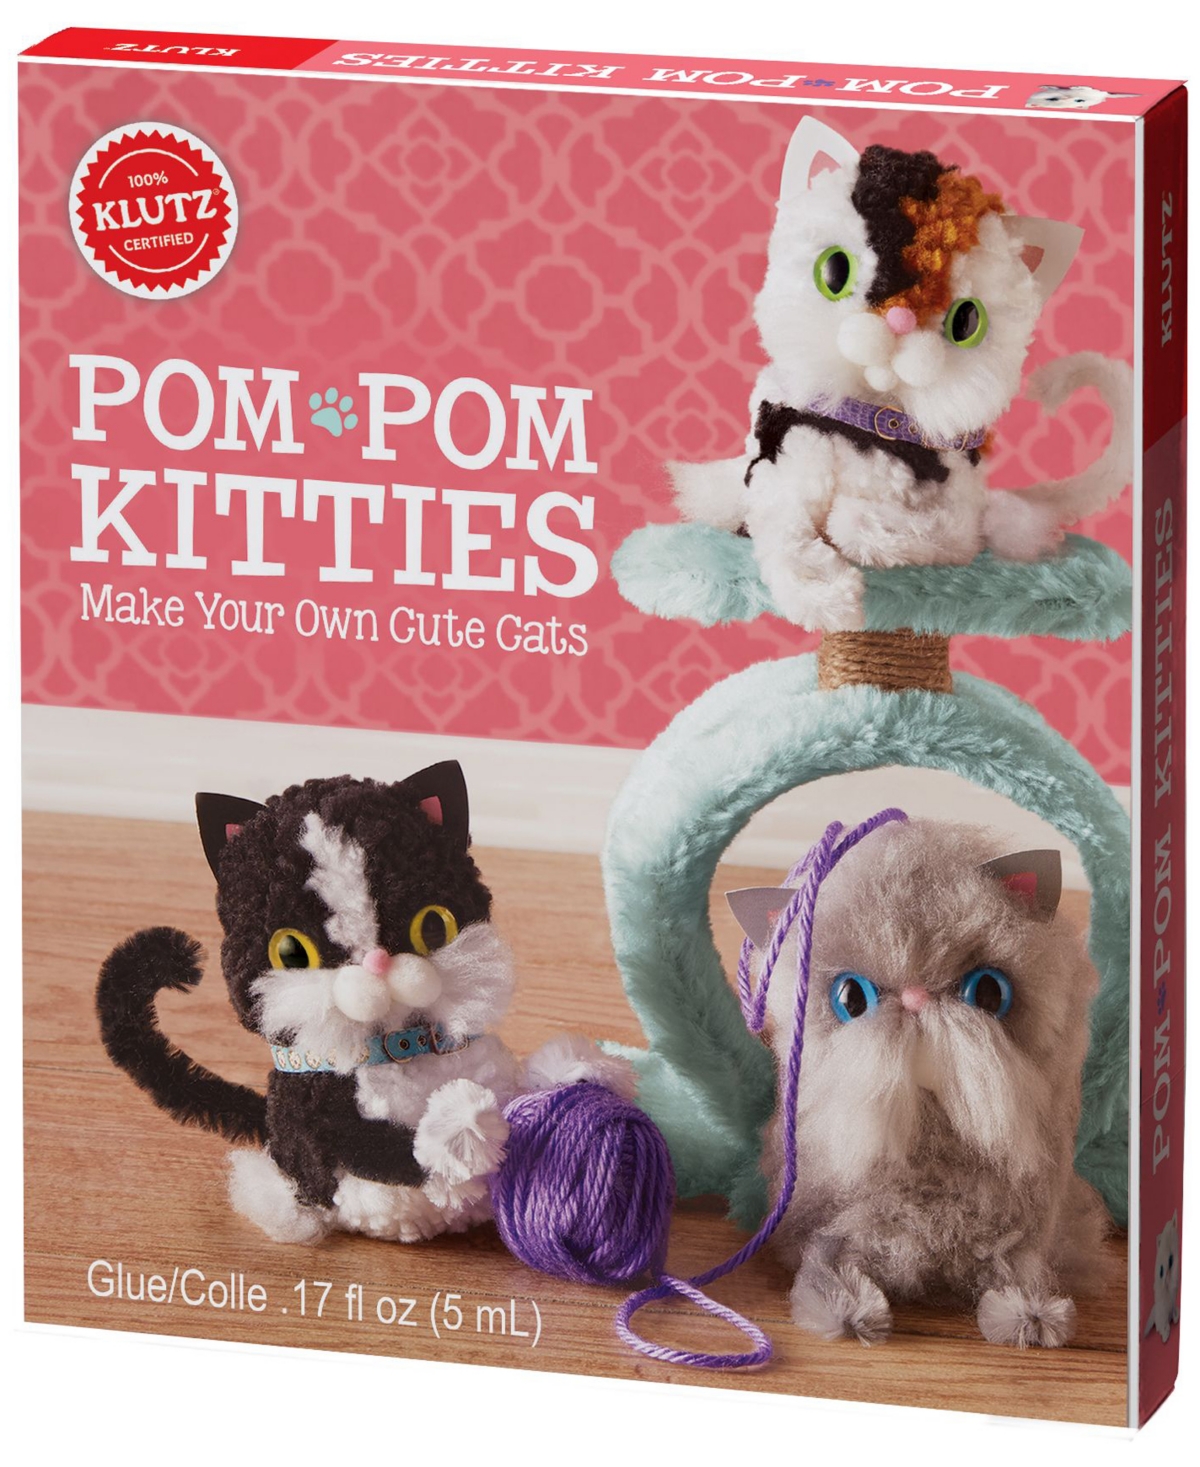 Pom-Pom Kitties